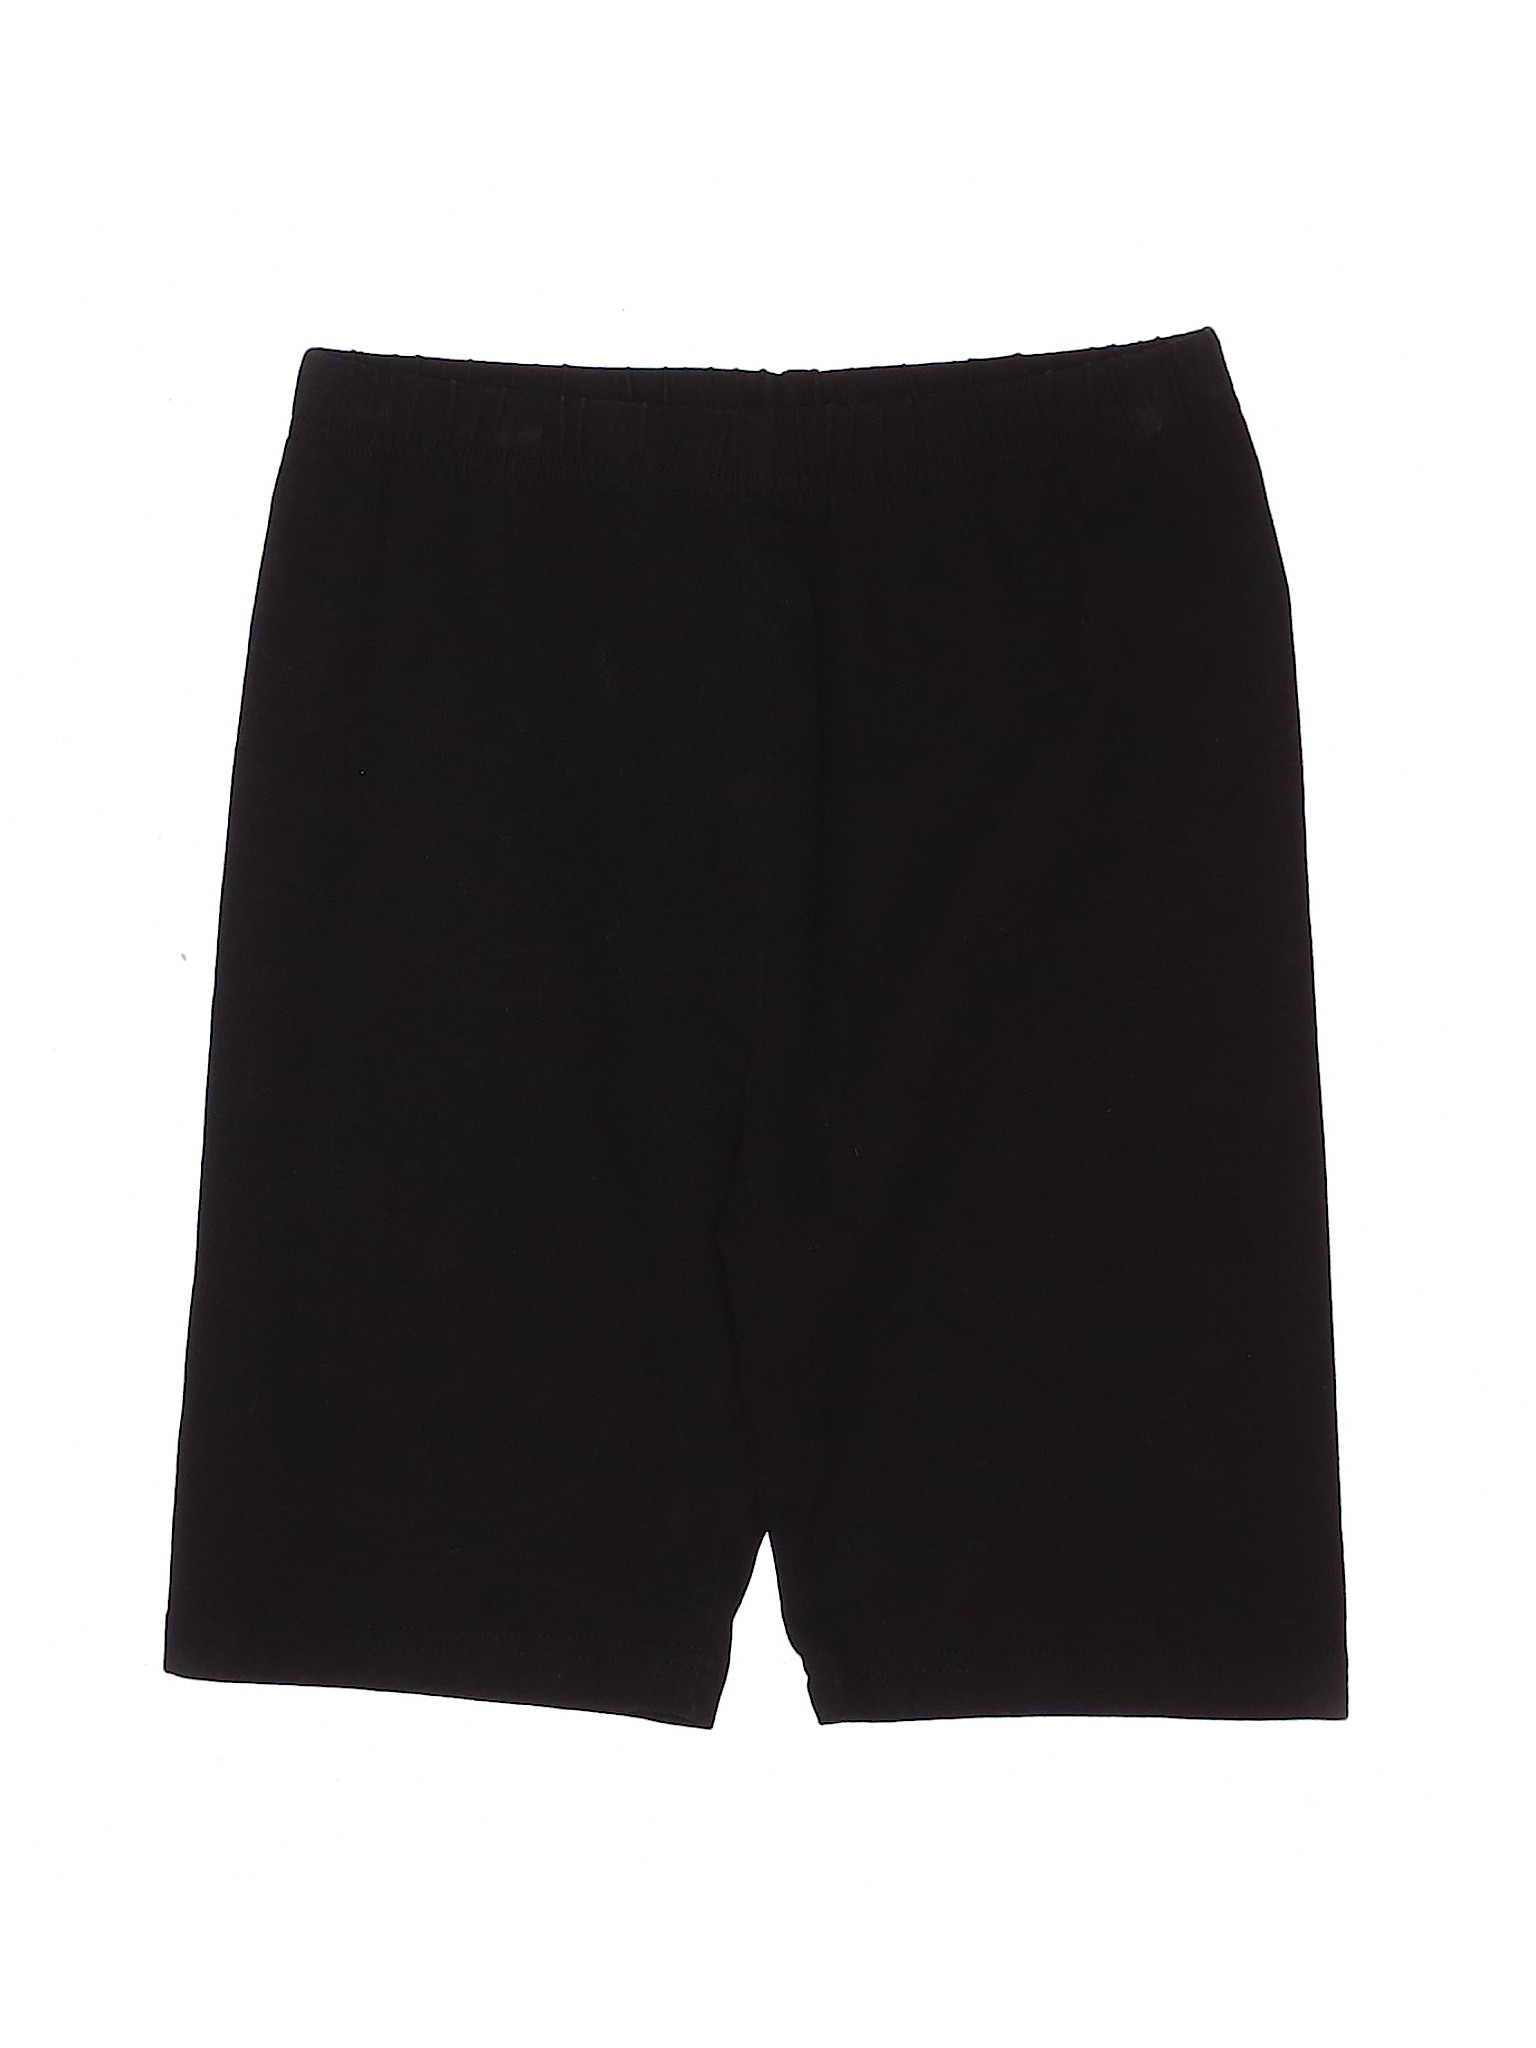 Unbranded Solid Black Shorts Size M - 41% off | thredUP